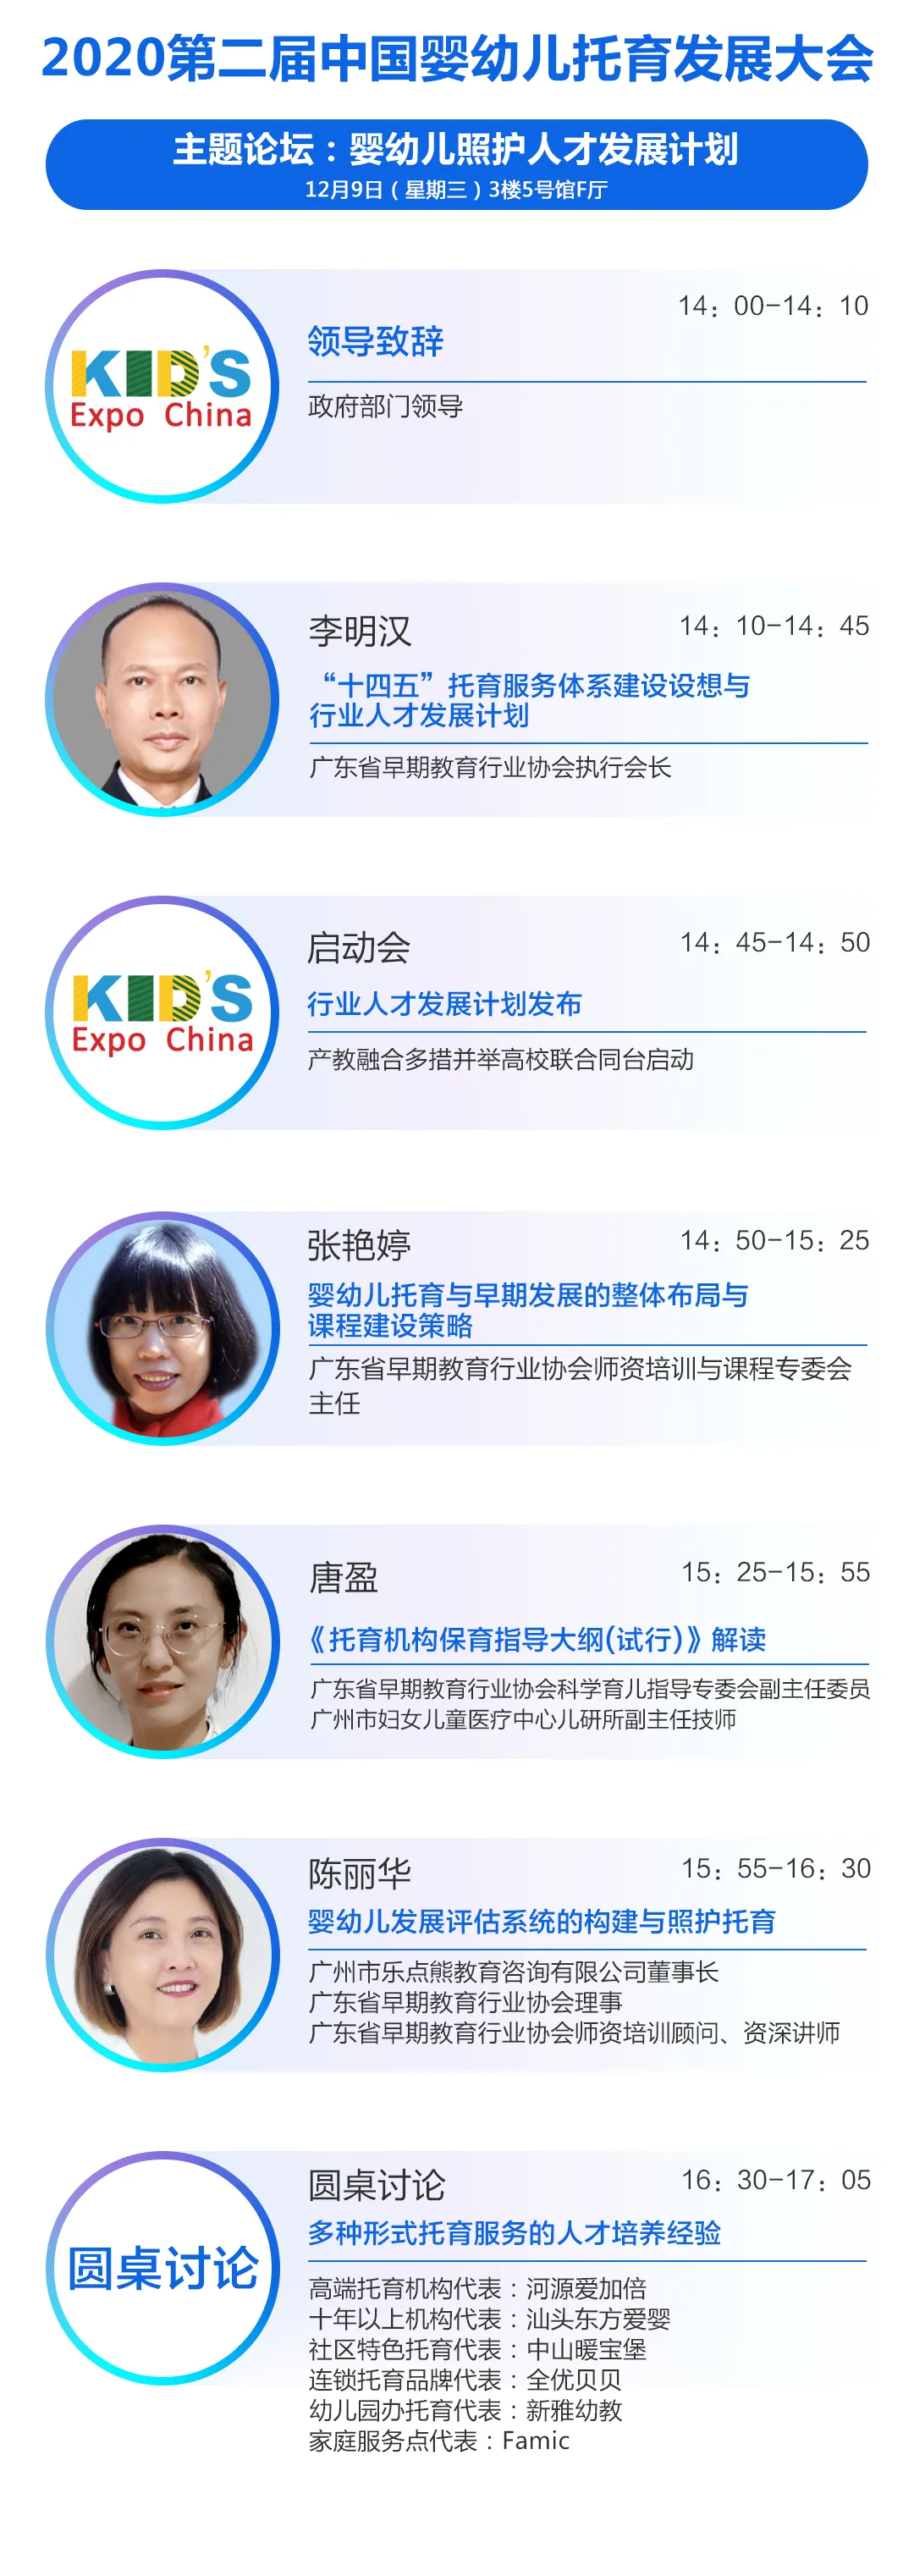 12月9日广州 | 中国幼教公益论坛唱响新时代学前教育高质量发展最强音